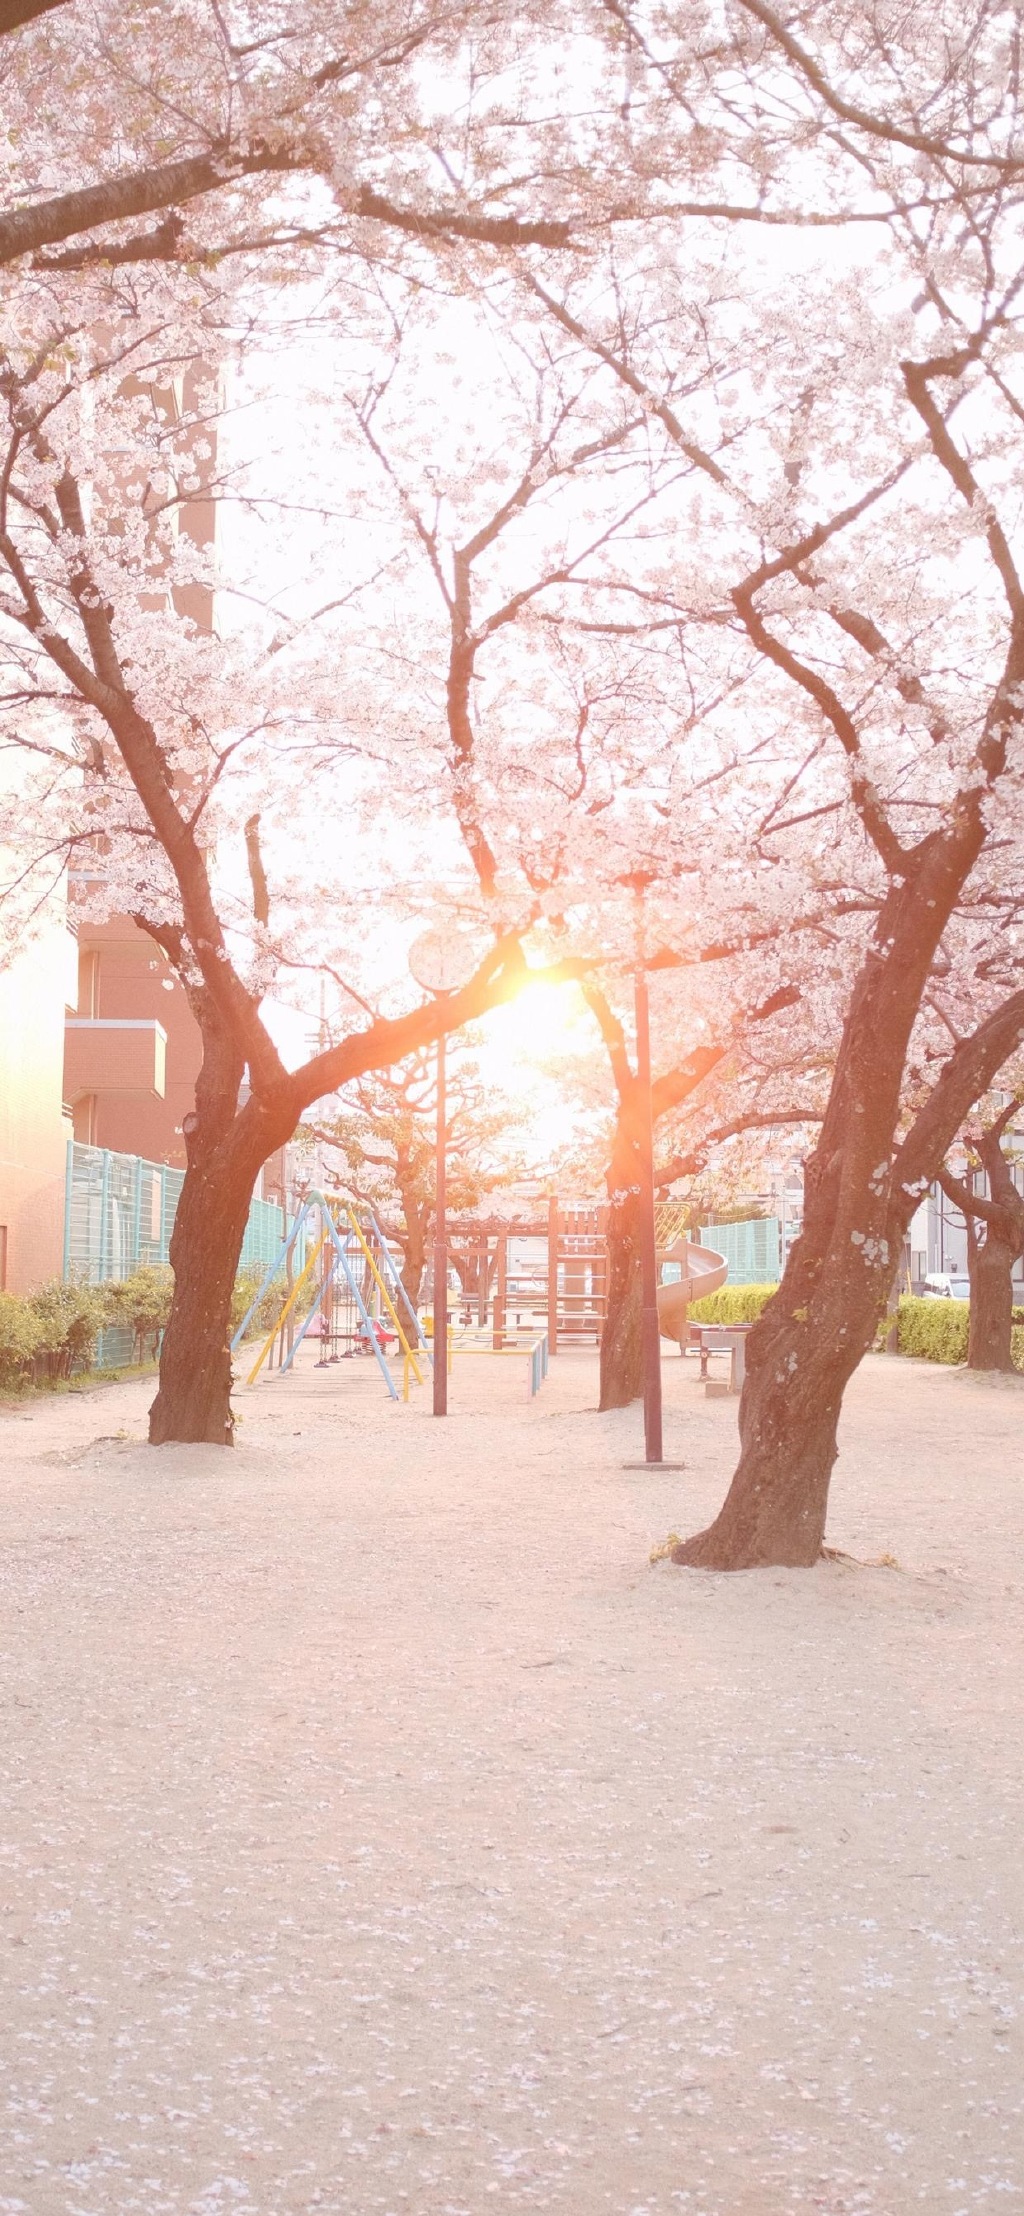 日式唯美风景摄影高清手机壁纸图片